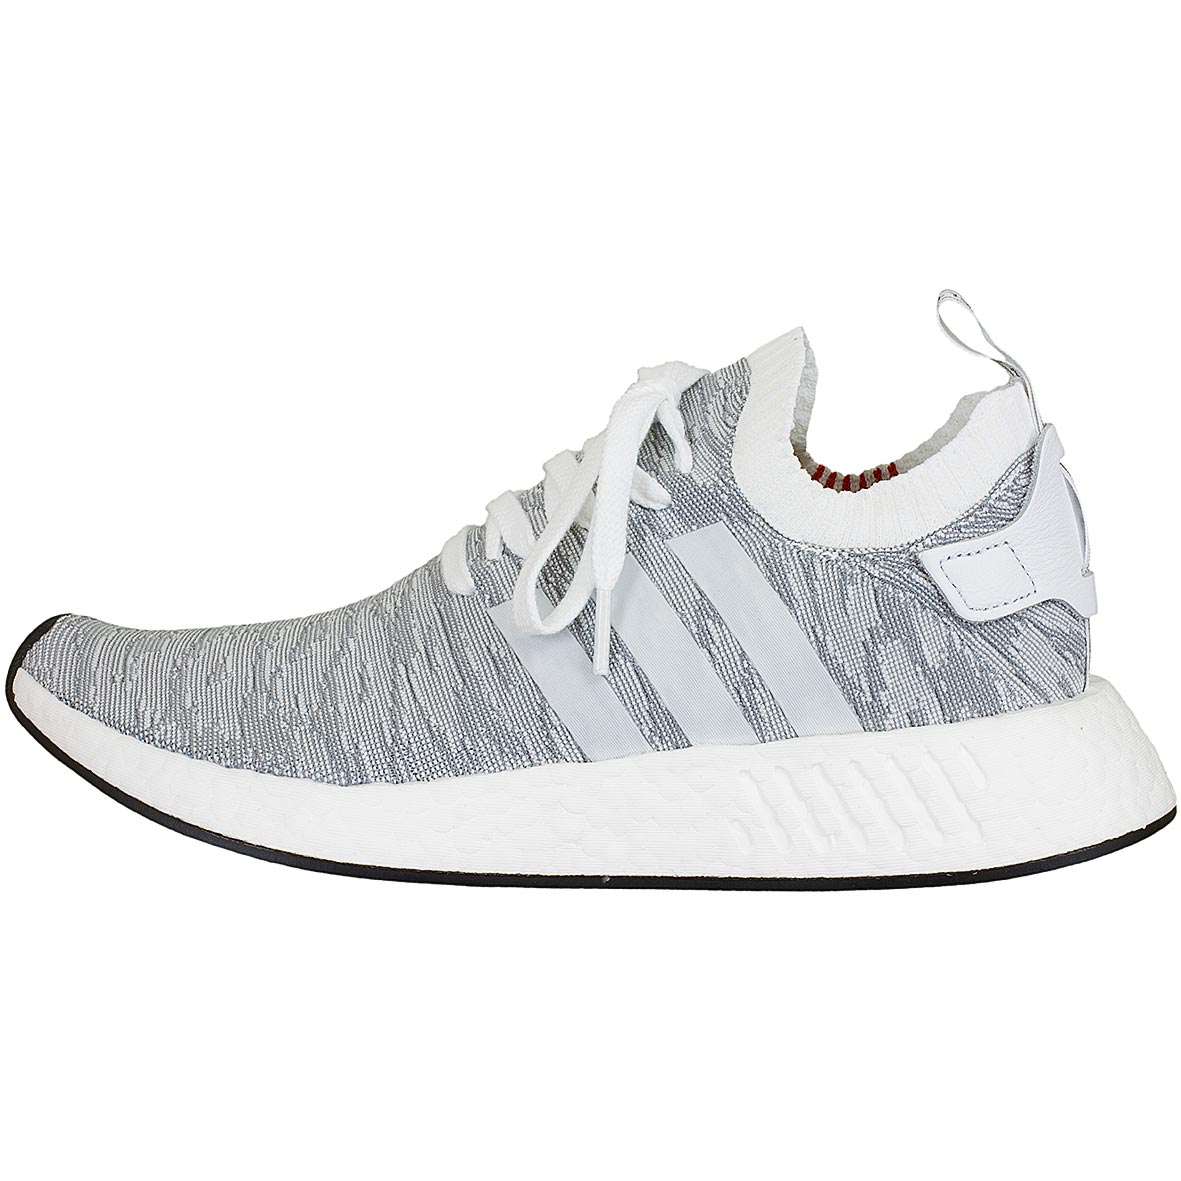 ☆ Adidas Originals Sneaker NMD R2 Primeknit weiß/schwarz - hier bestellen!